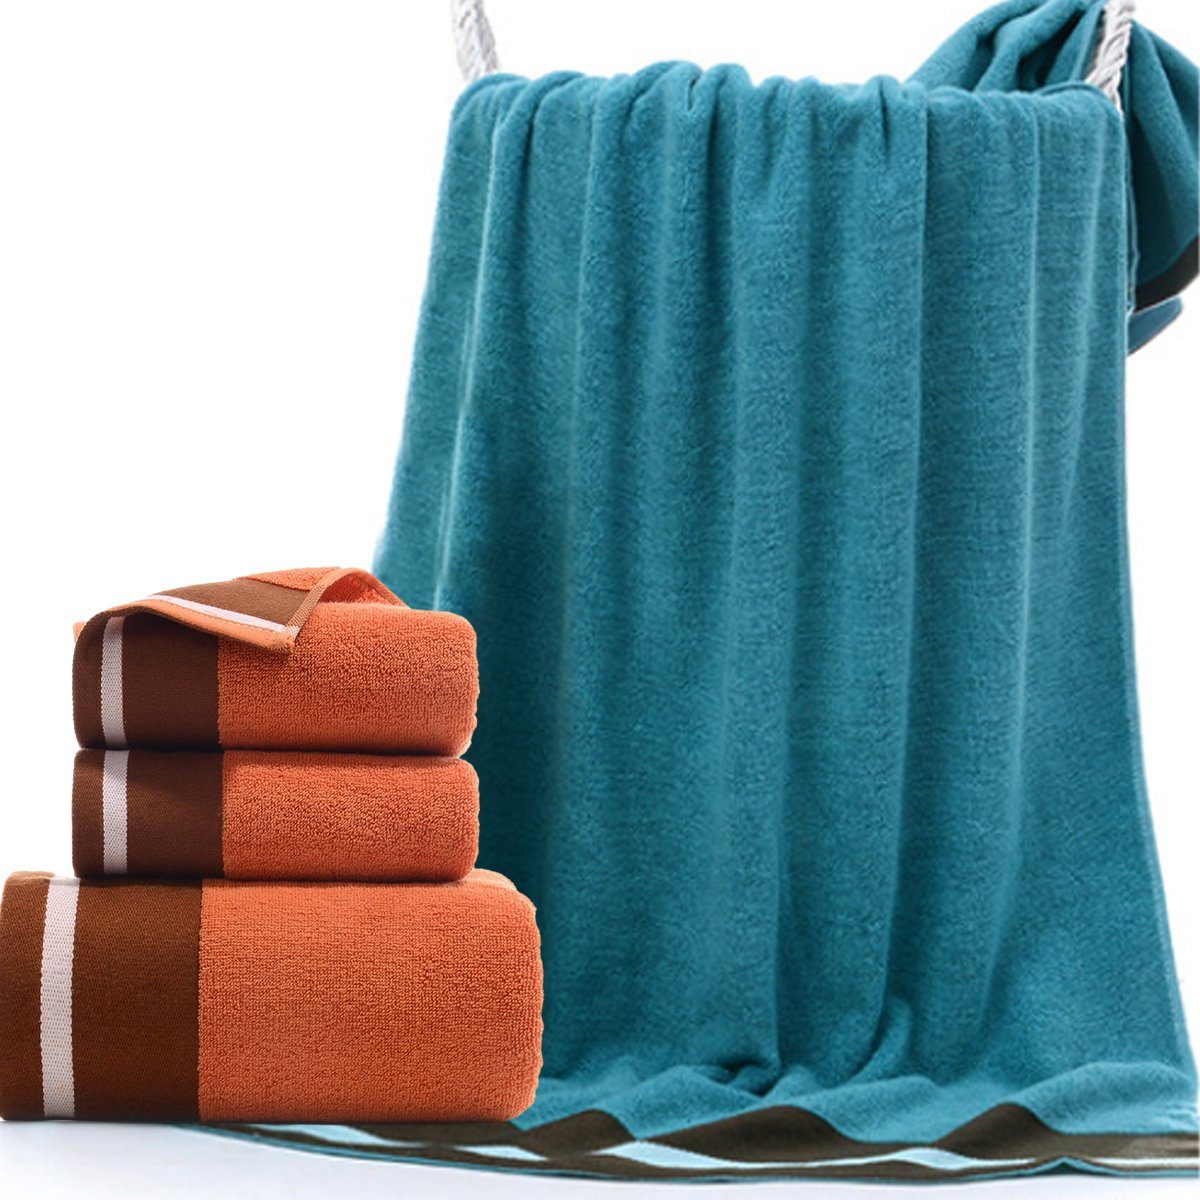 Handtuch und Set zu Jormftte weich,für Orange Handtücher Set-2xHandtuch,1xBadetuch,saugfähig Hause